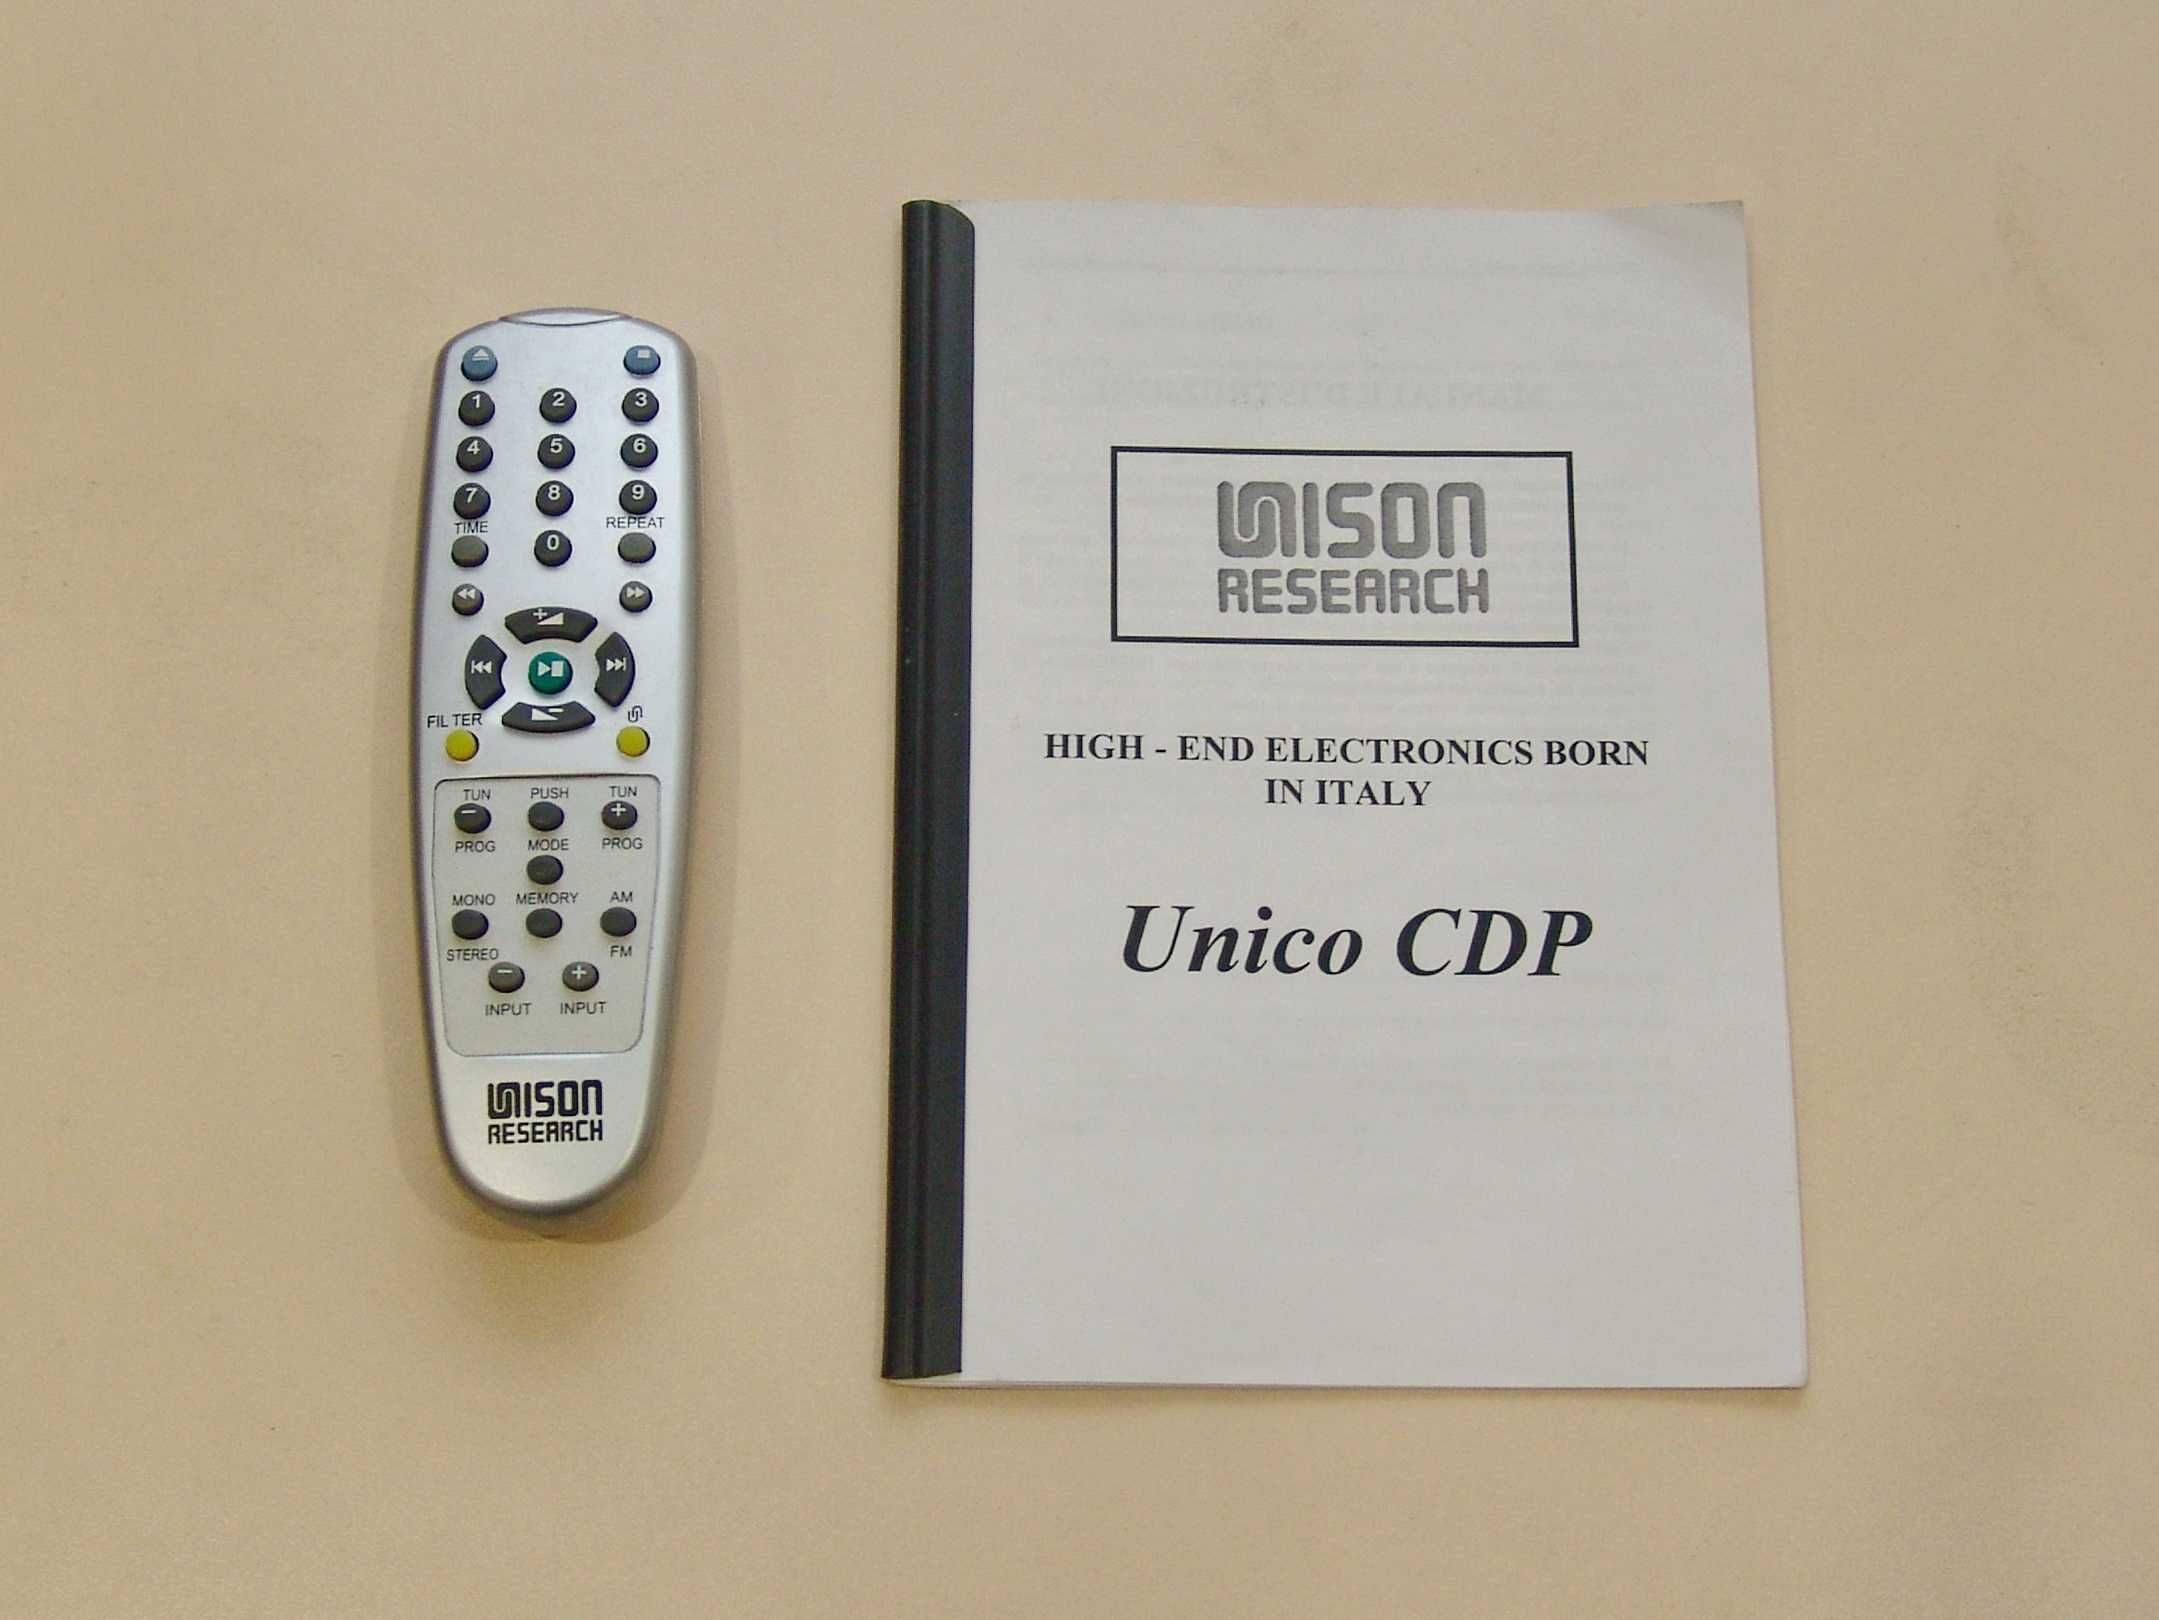 HI-END Гибридный CD-проигрыватель Unison Research Unico CDP. Италия.